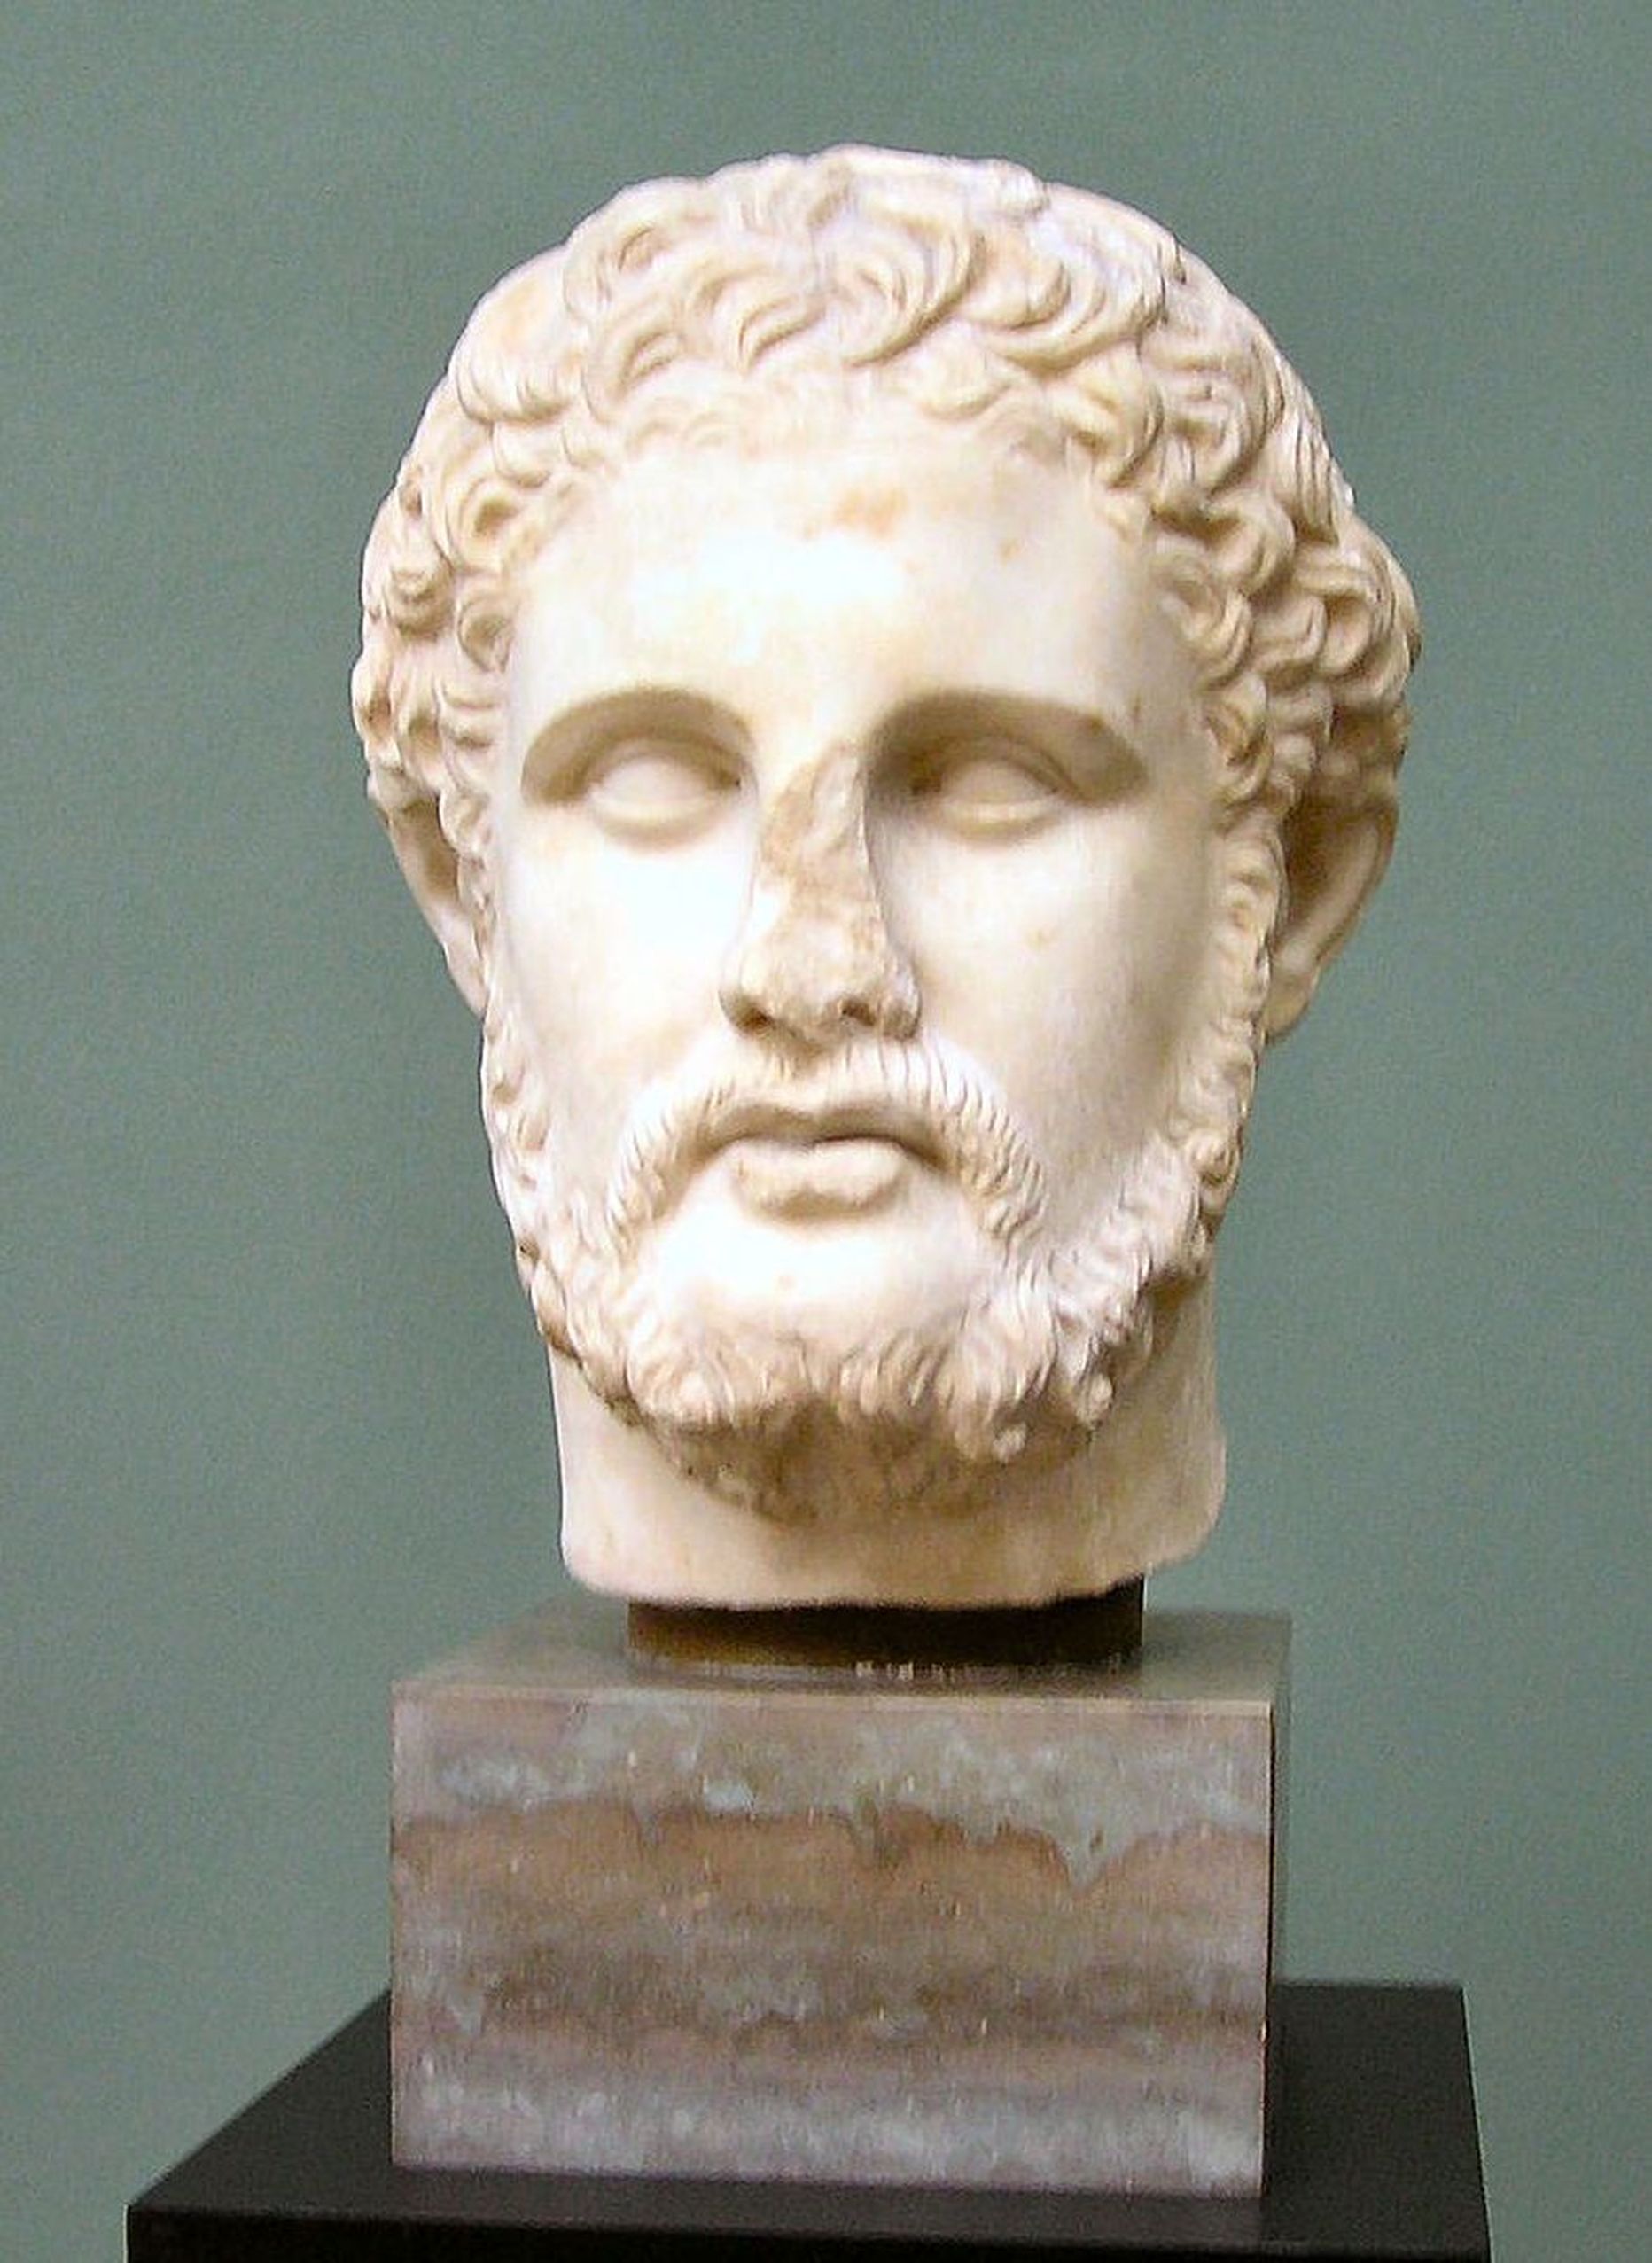 Hellenismi ajastust pärit kuju, mis kujutab Makedoonia kuningat Filippos II